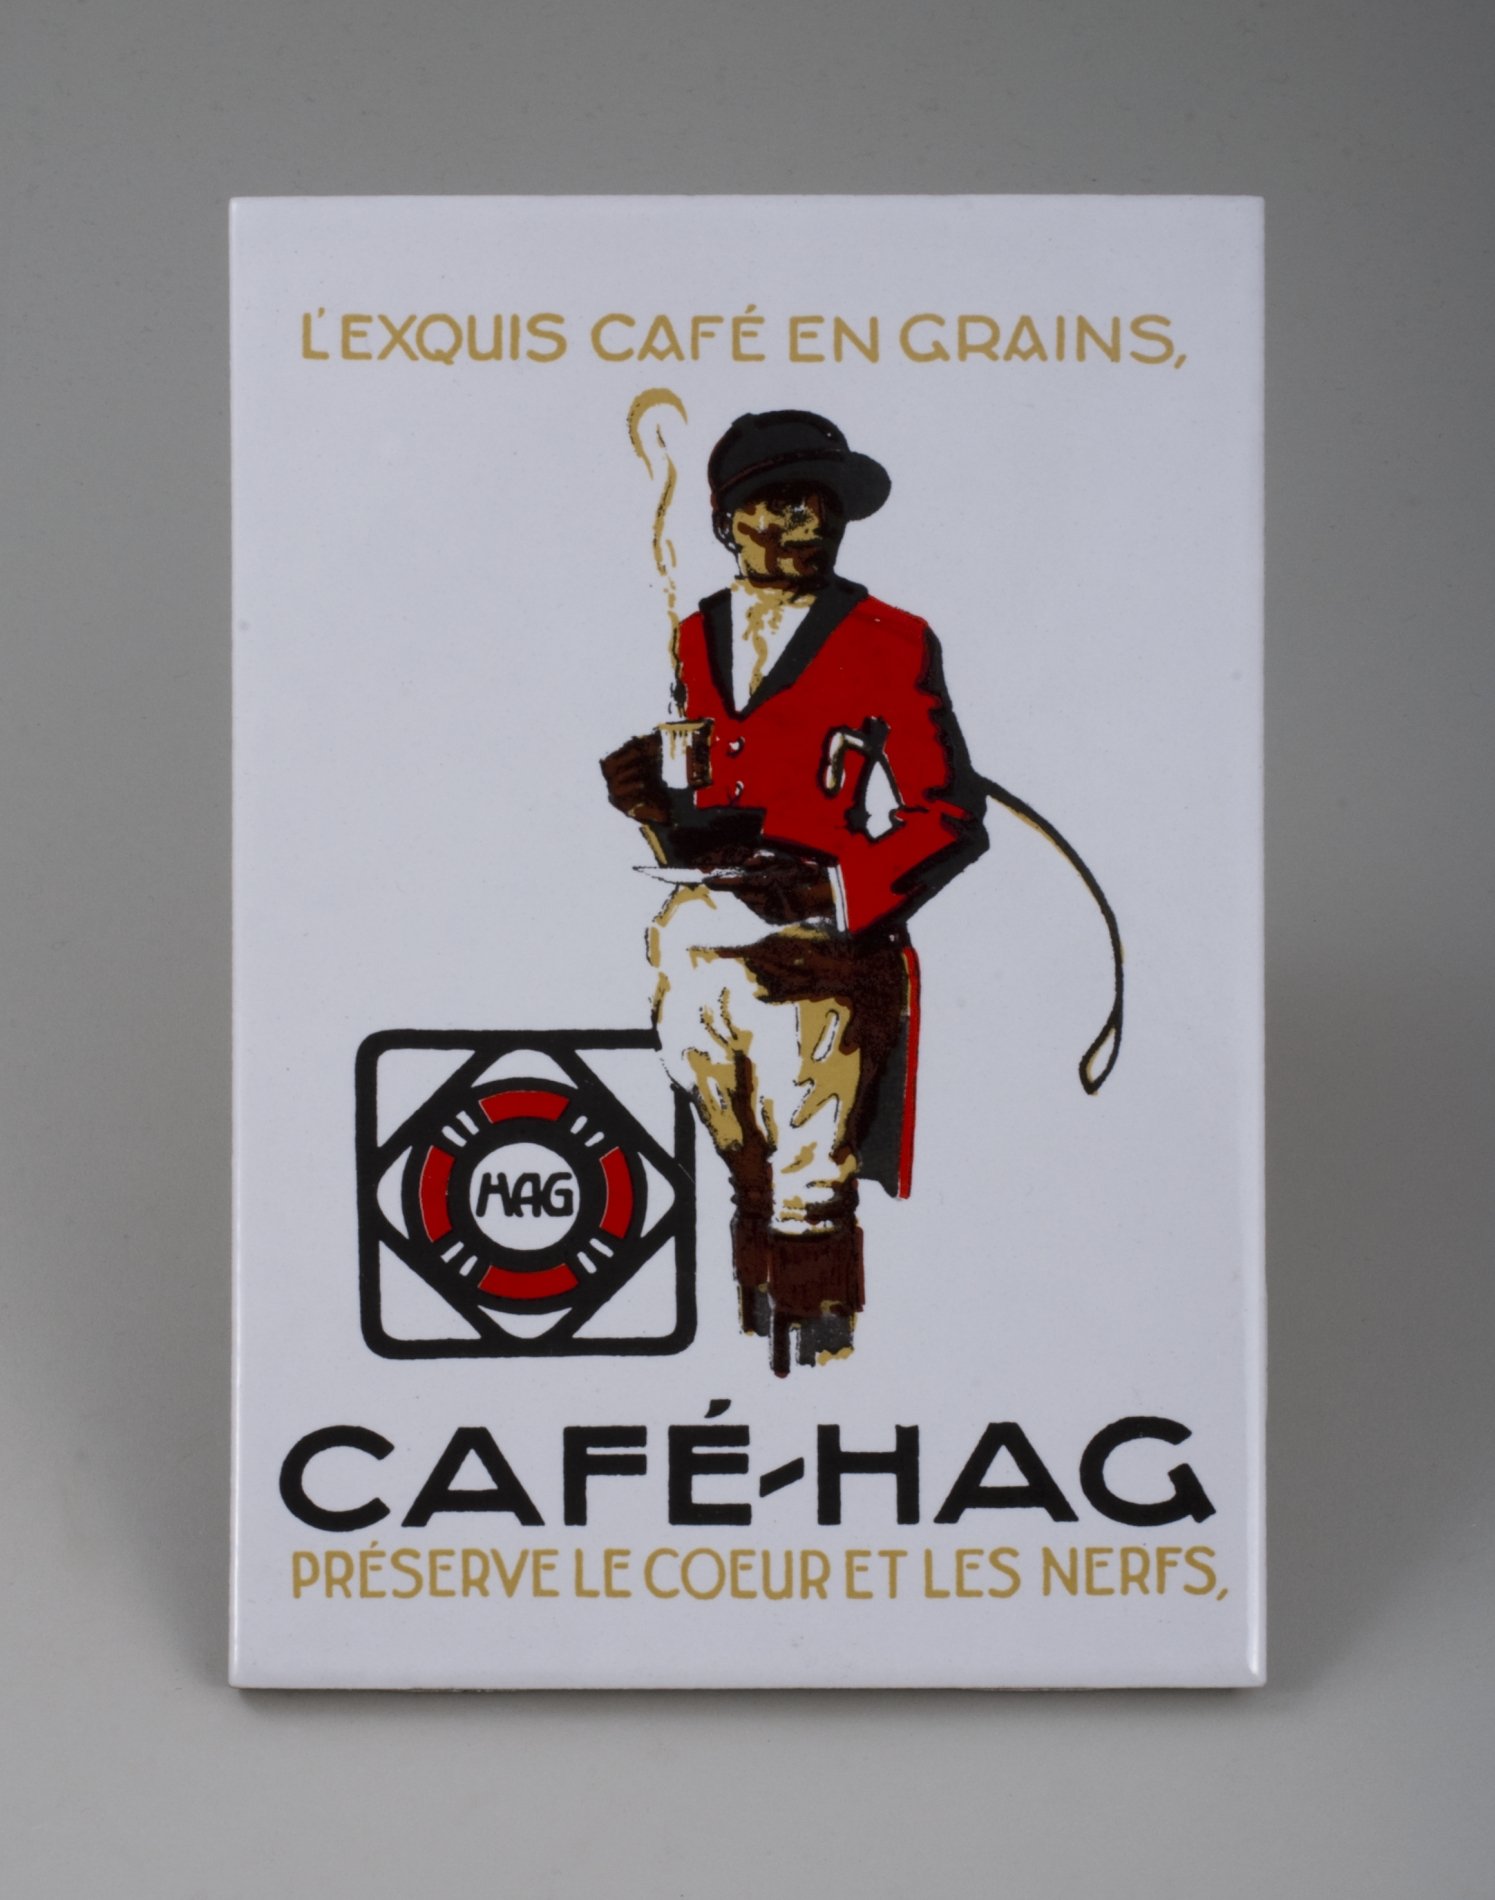 Werbe-Fliese "Café-HAG" (Stiftung Domäne Dahlem - Landgut und Museum, Weiternutzung nur mit Genehmigung des Museums CC BY-NC-SA)